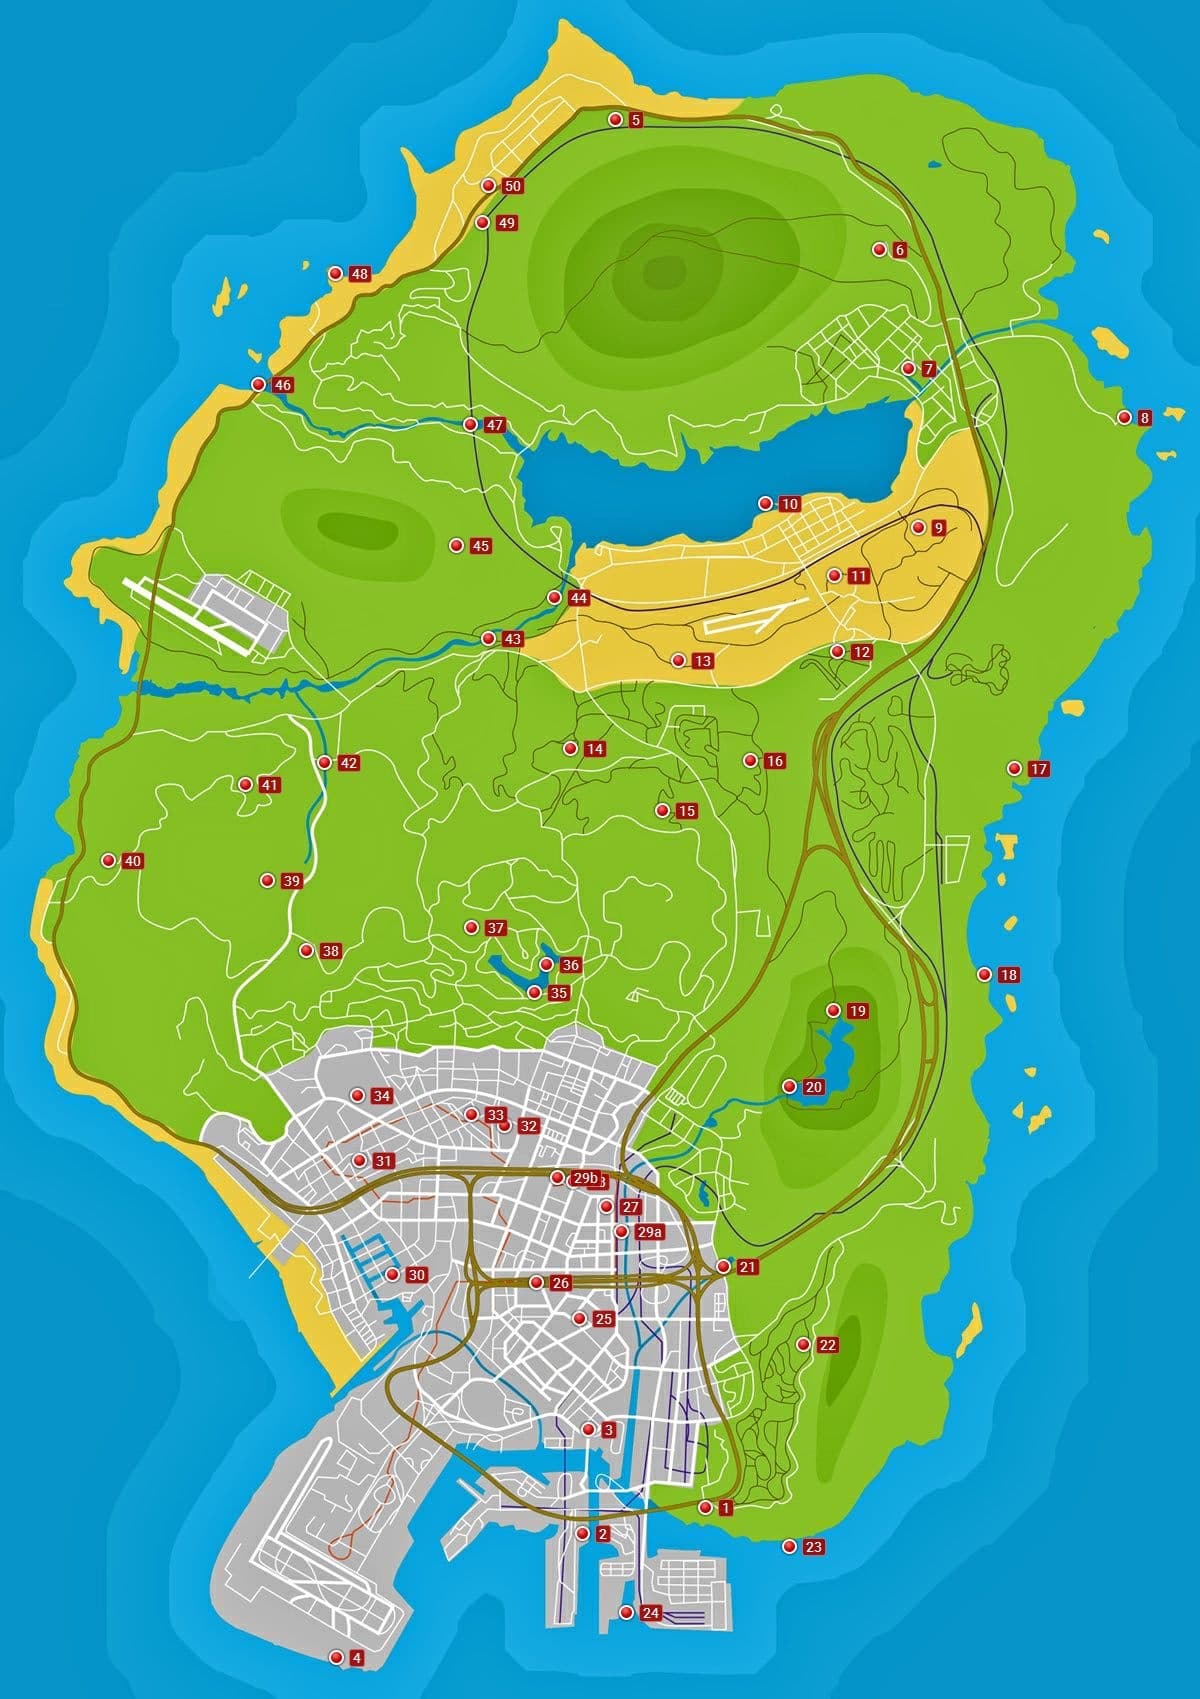 Localização de todas as partes da nave espacial em Grand Theft Auto V